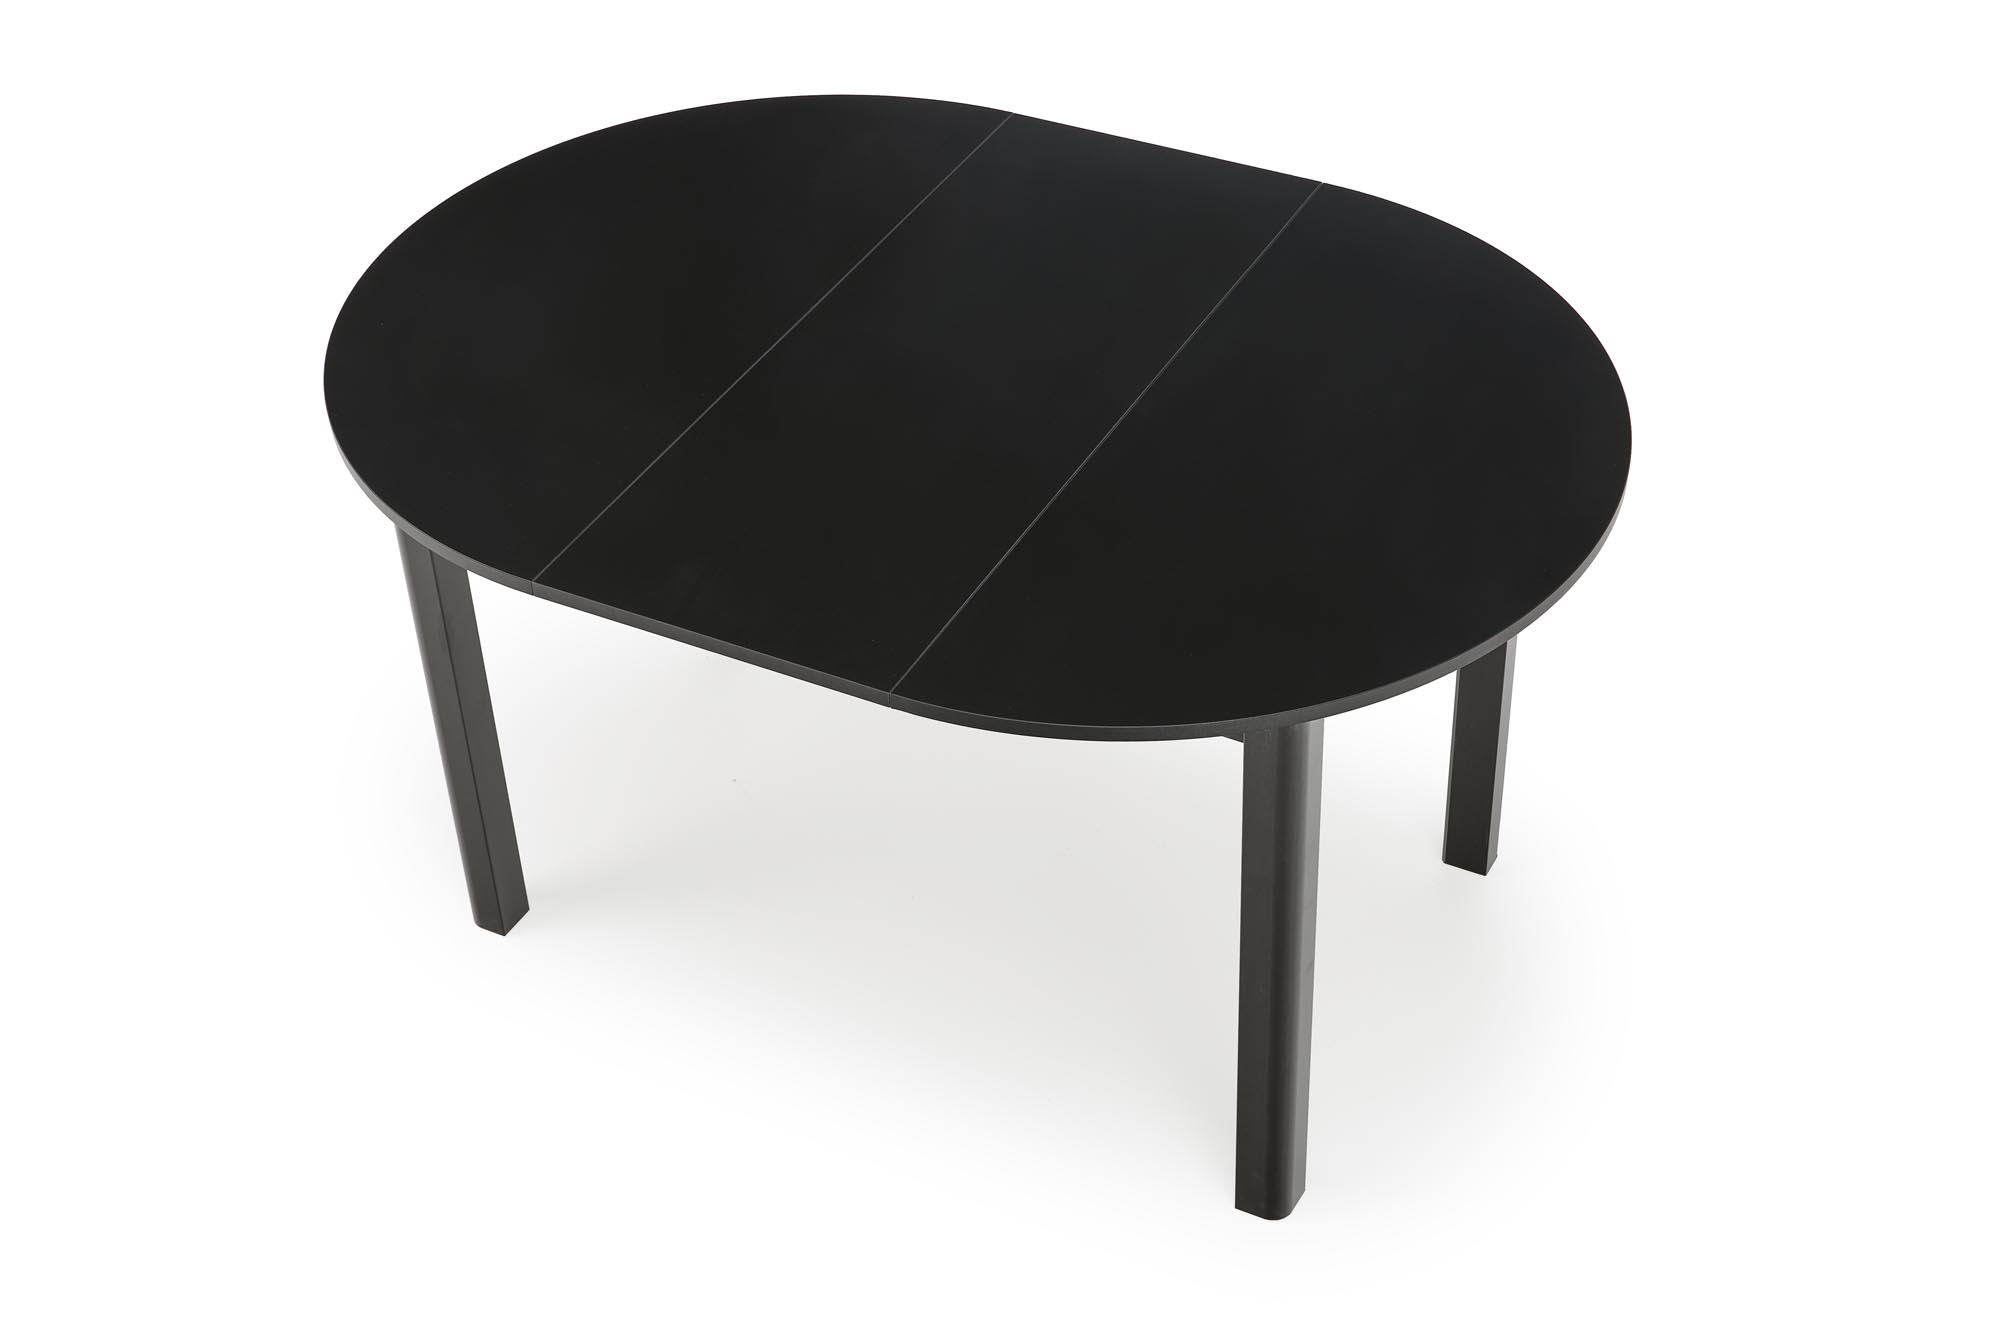 stôl okrúhly102-142 rozkladany Ringo - Čierny Stôl okrúhly102-142 rozkladany ringo - Čierny